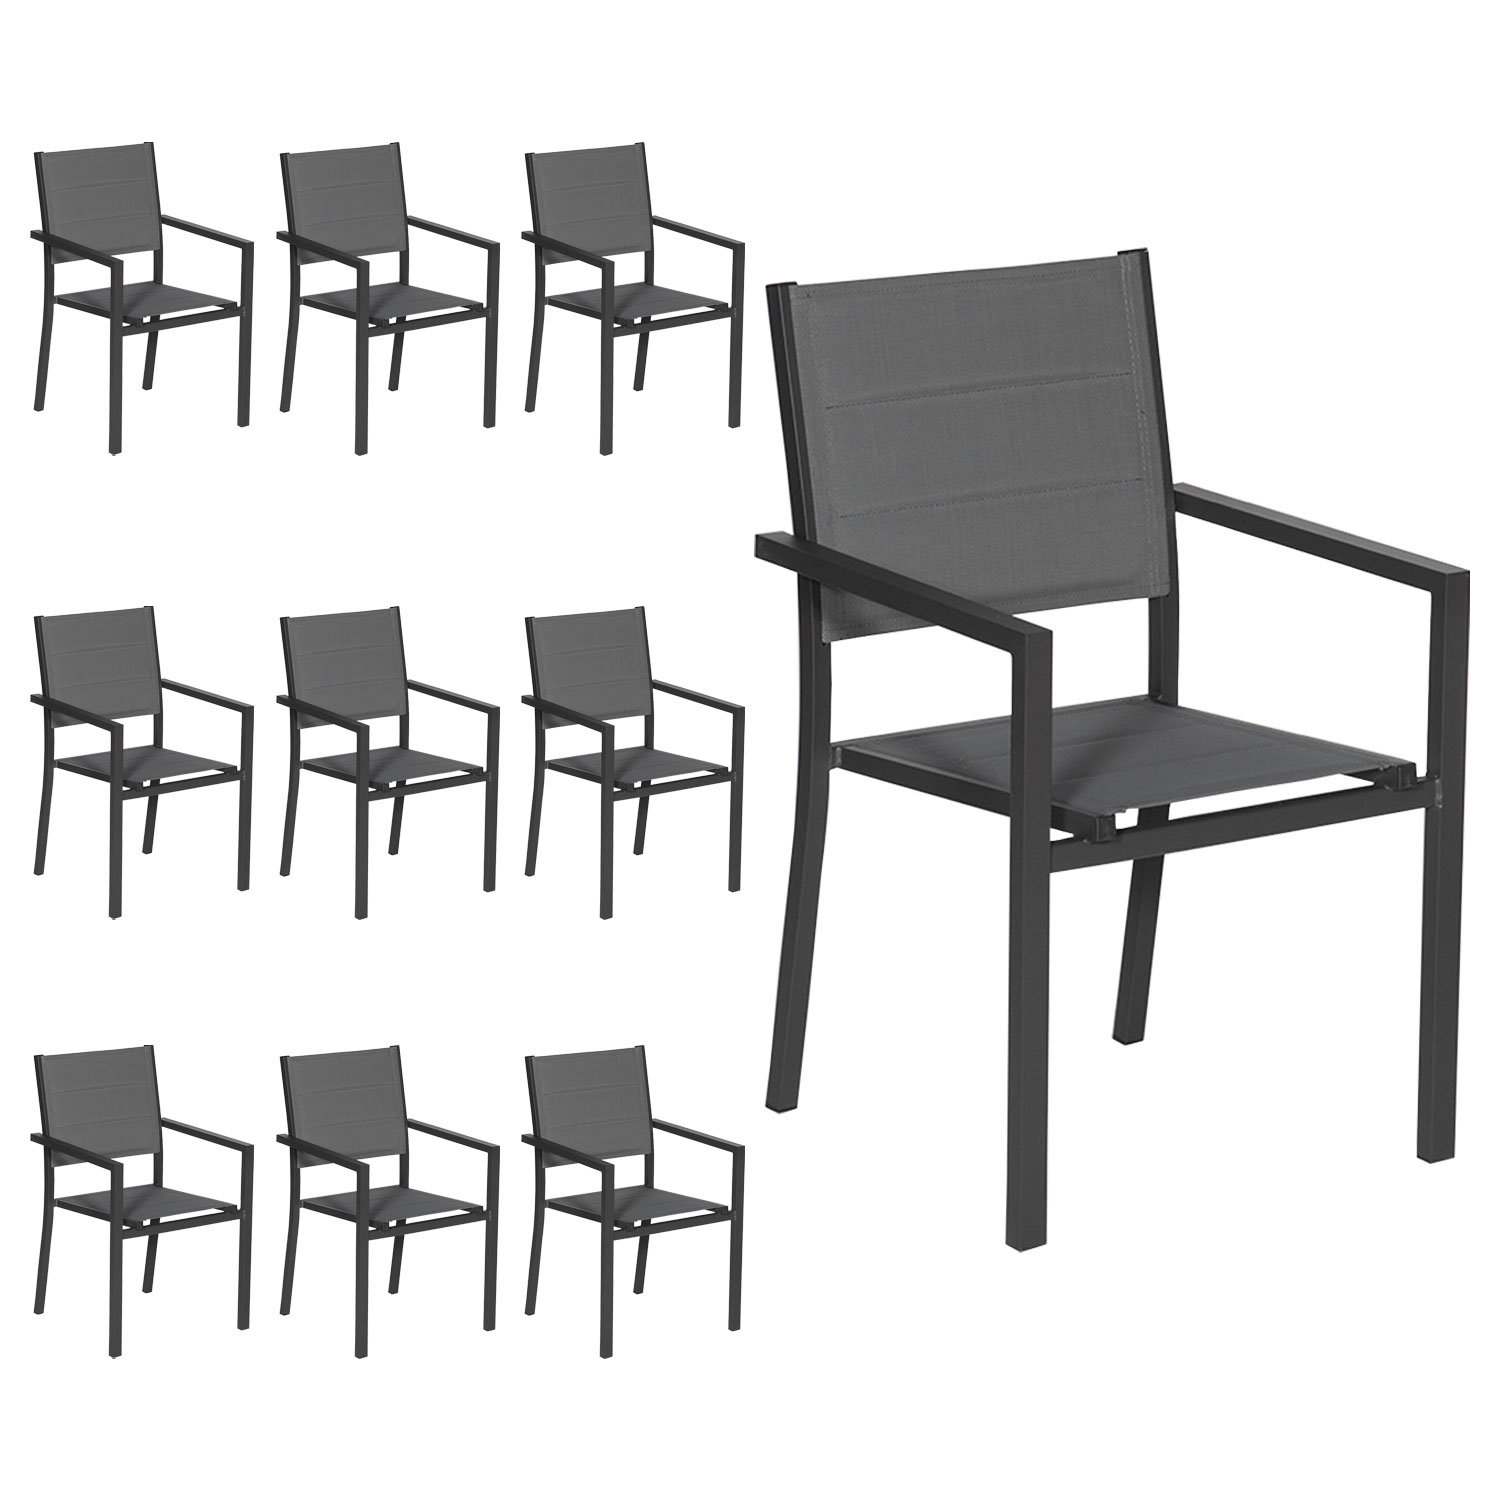 Set aus 10 gepolsterten Stühlen aus anthrazitfarbenem Aluminium - graues Textilene